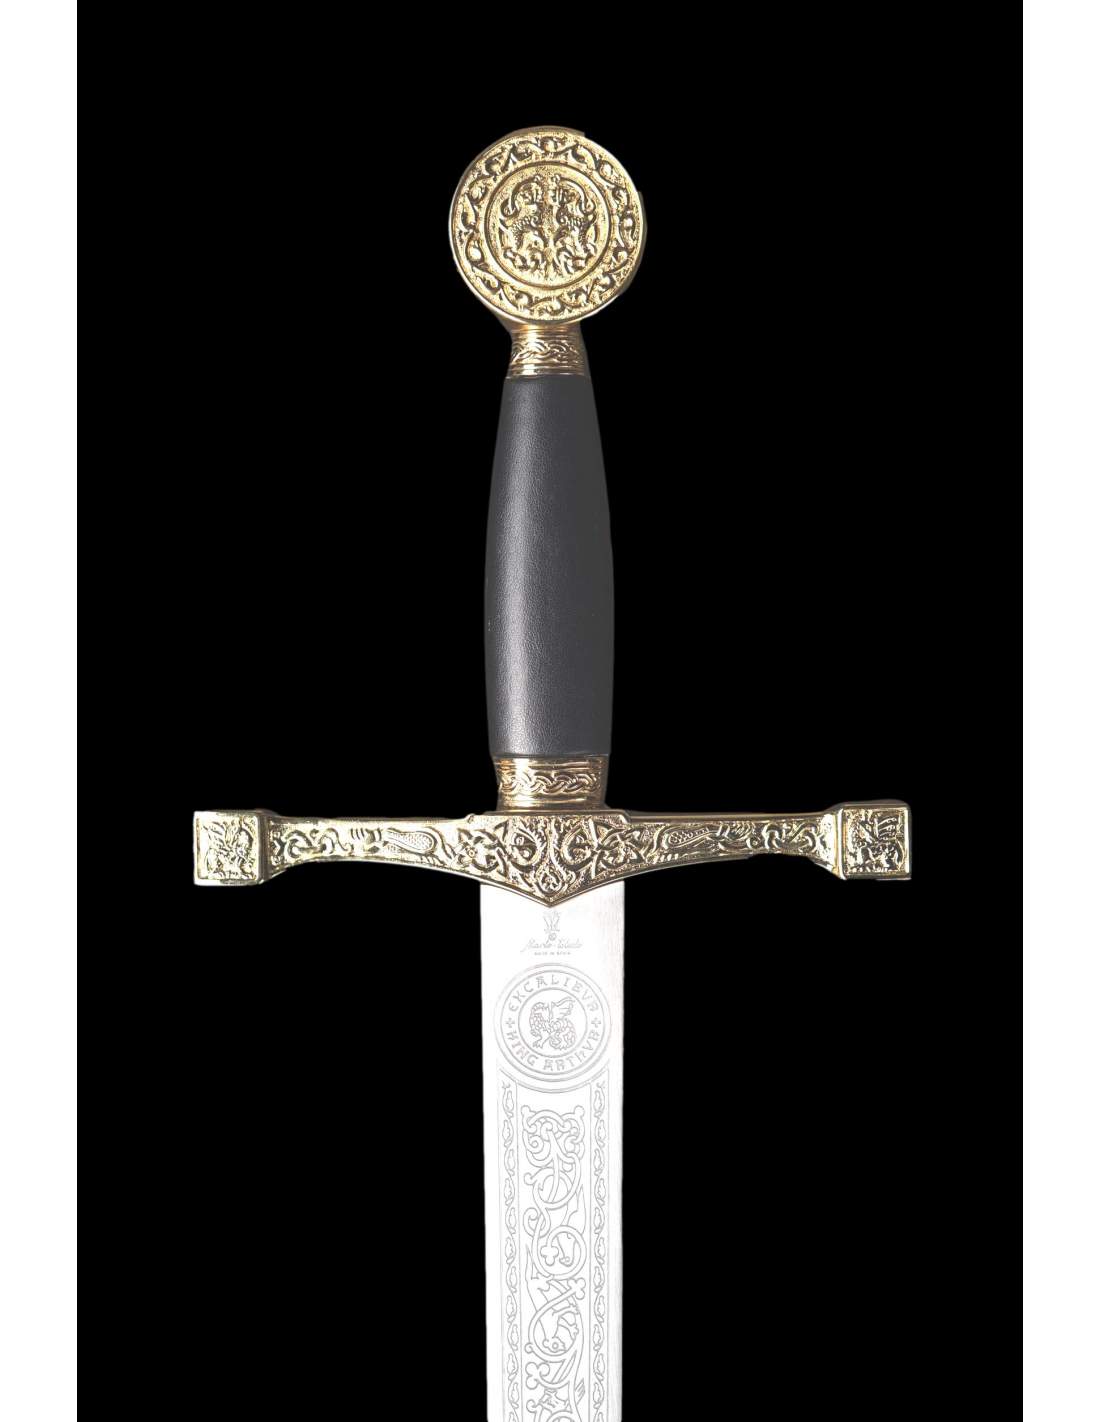 excalibur sword